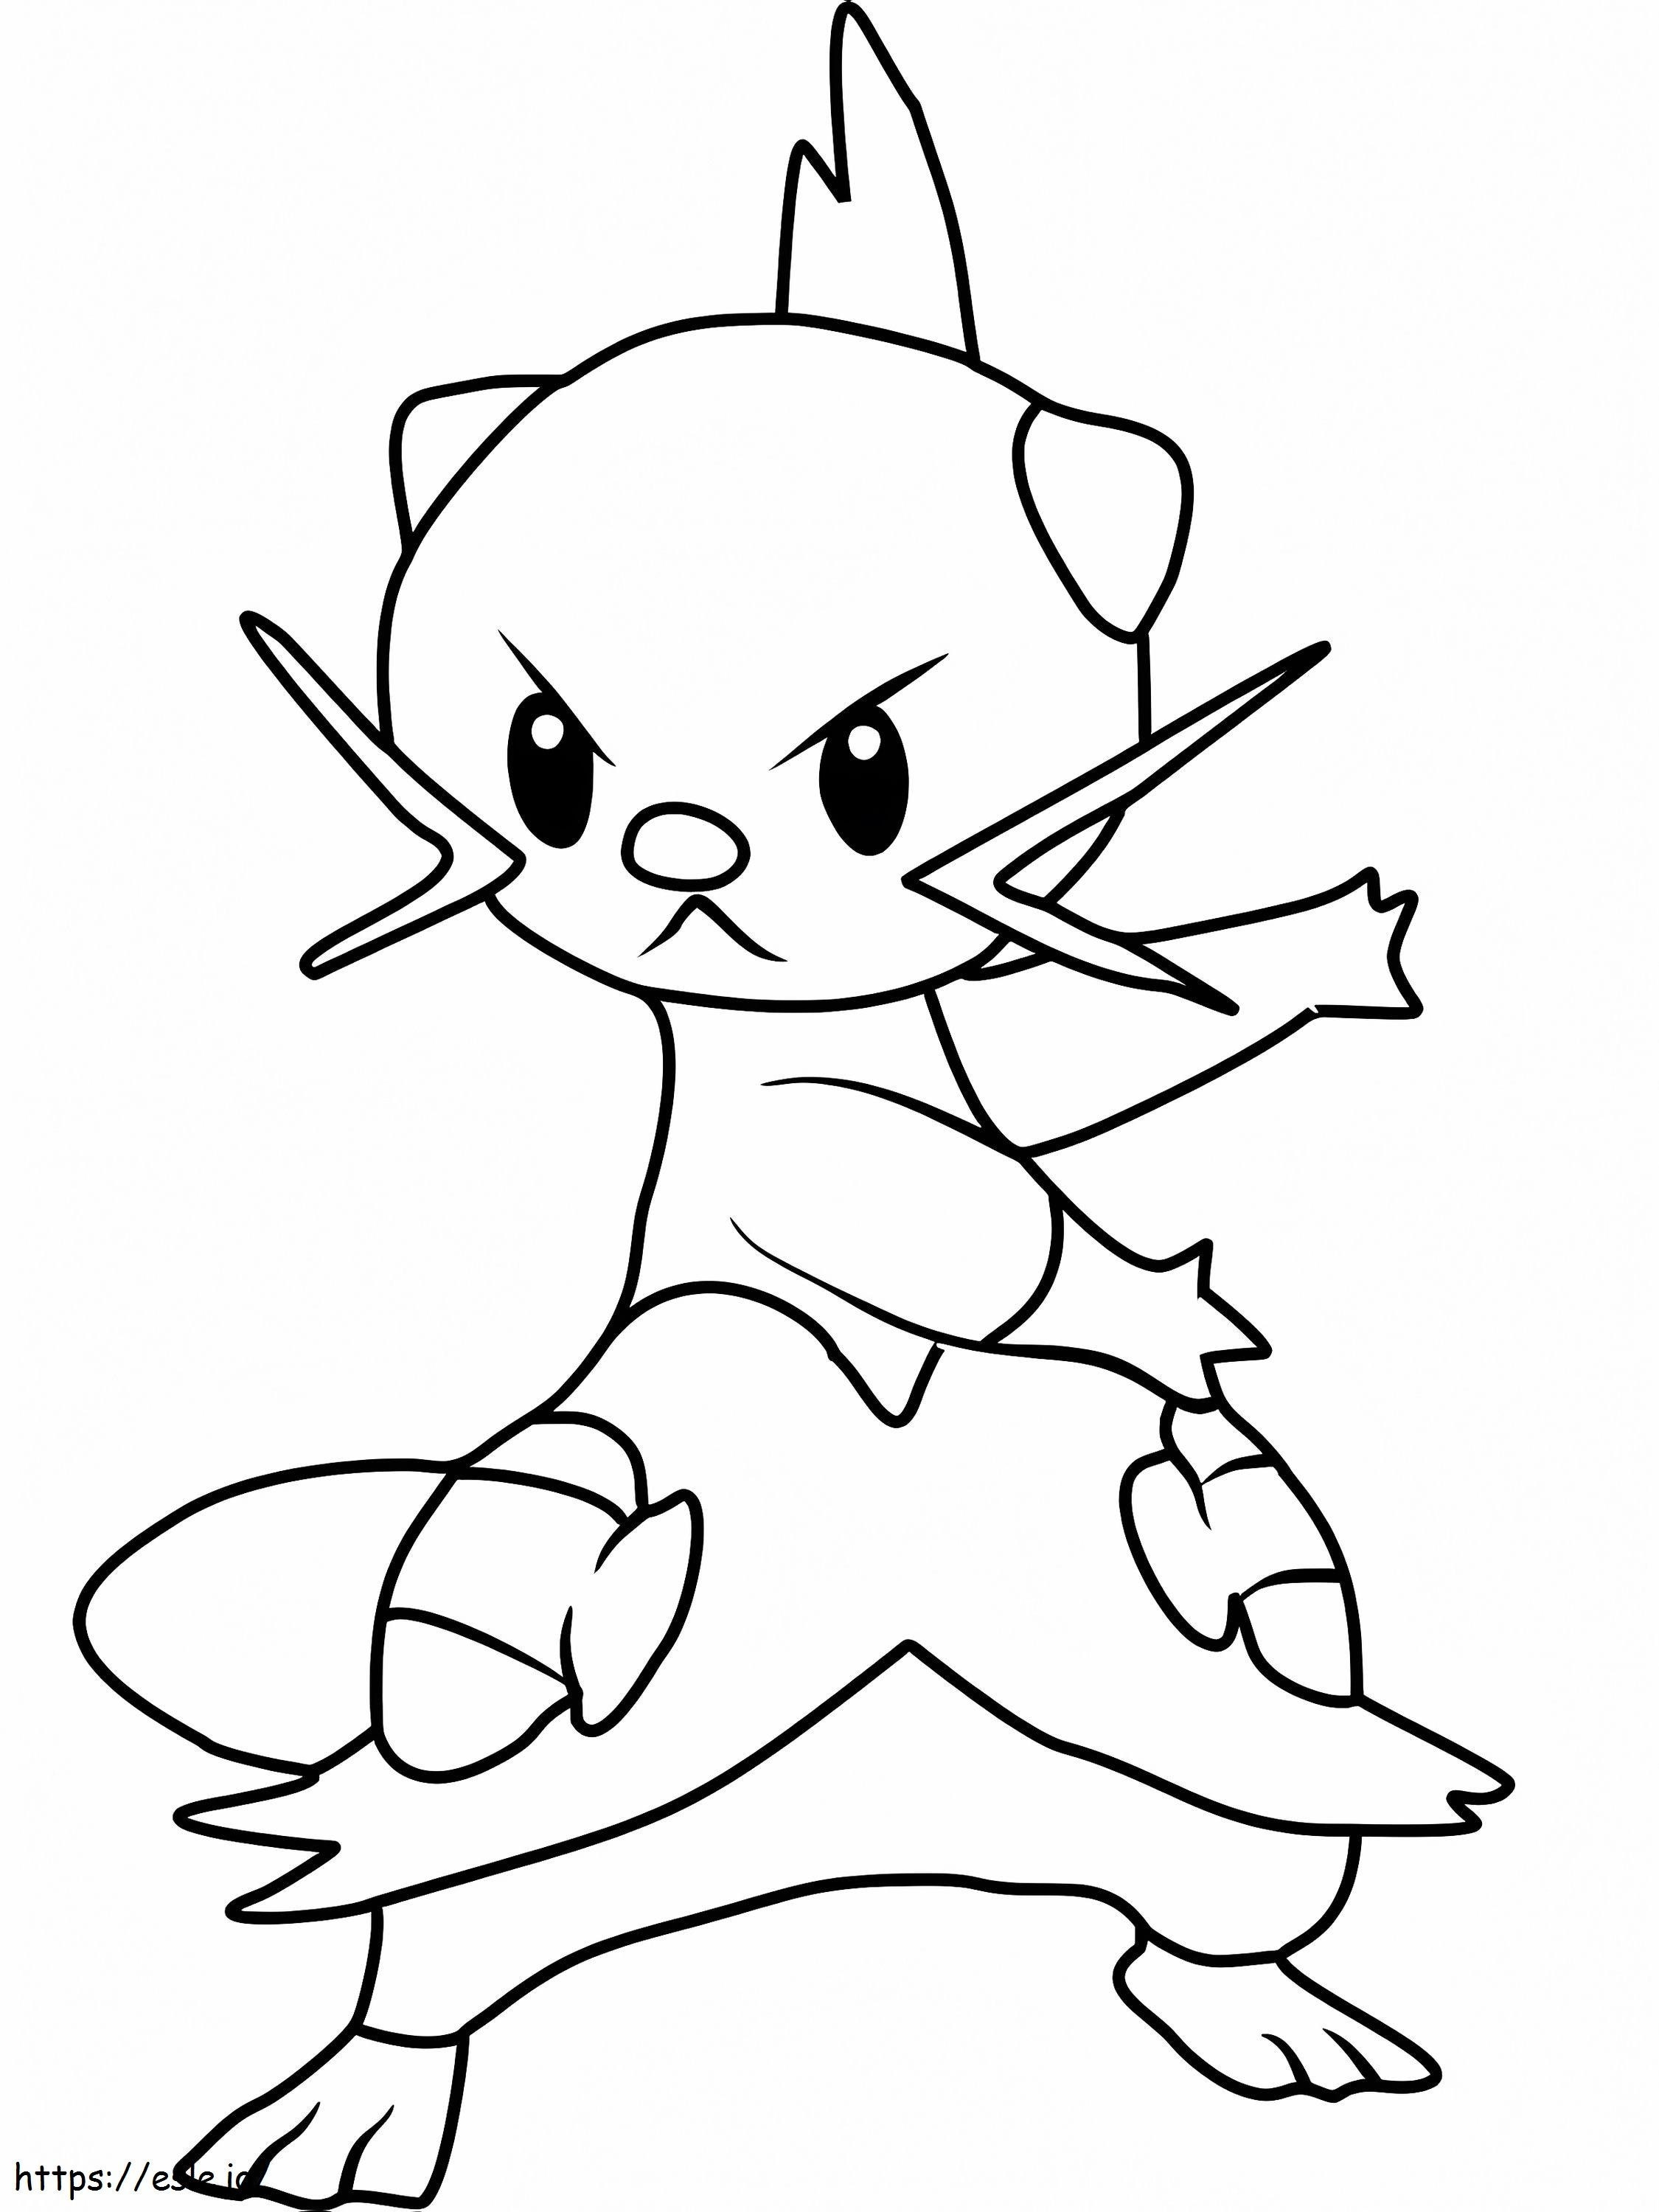 Coloriage Pokémon Dewott Gen 5 à imprimer dessin